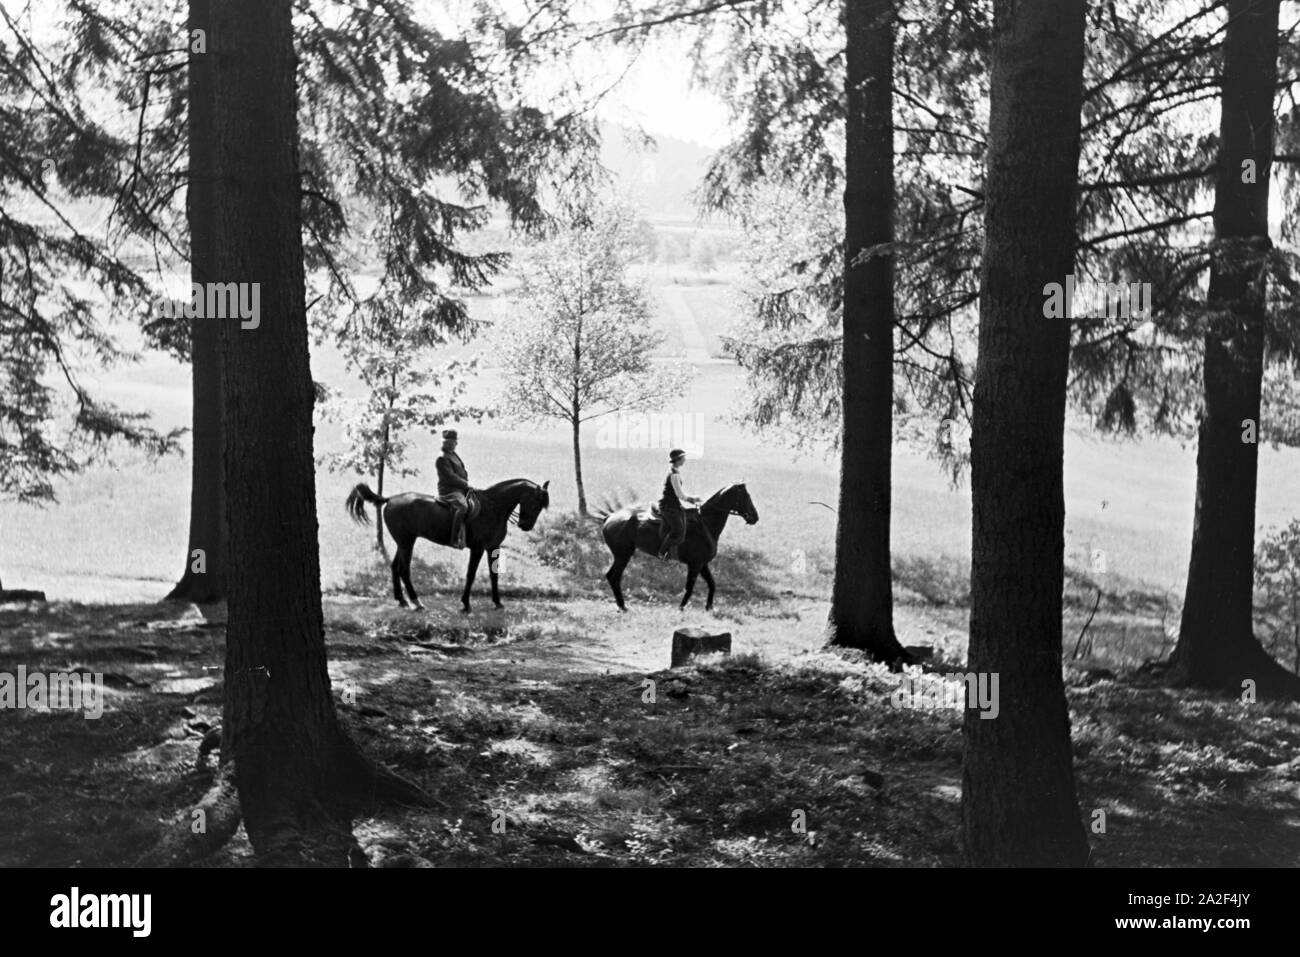 Reiter bei einem Reitausflug im Wald bei Freudenstadt, Deutschland 1930er Jahre. Reiter auf einem Pferd reiten Reise in den Wäldern in der Nähe von Freudenstadt, Deutschland 1930. Stockfoto